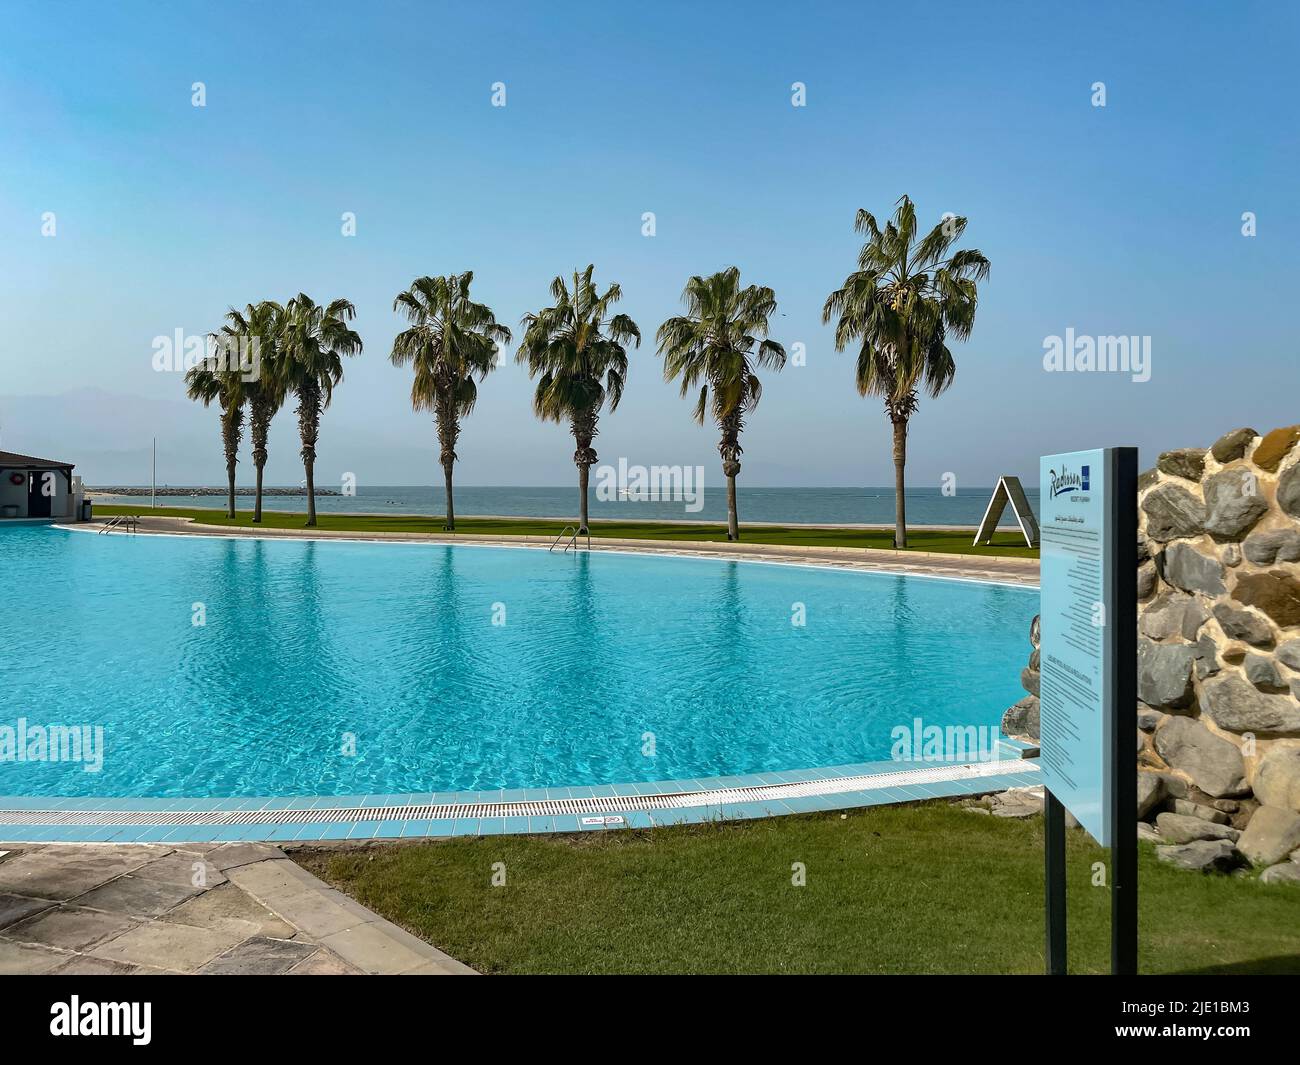 Tropical Resort - verano gateaway - vacaciones relajantes con palmeras, piscina y playa en los Emiratos del Norte de los Emiratos Árabes Unidos Foto de stock